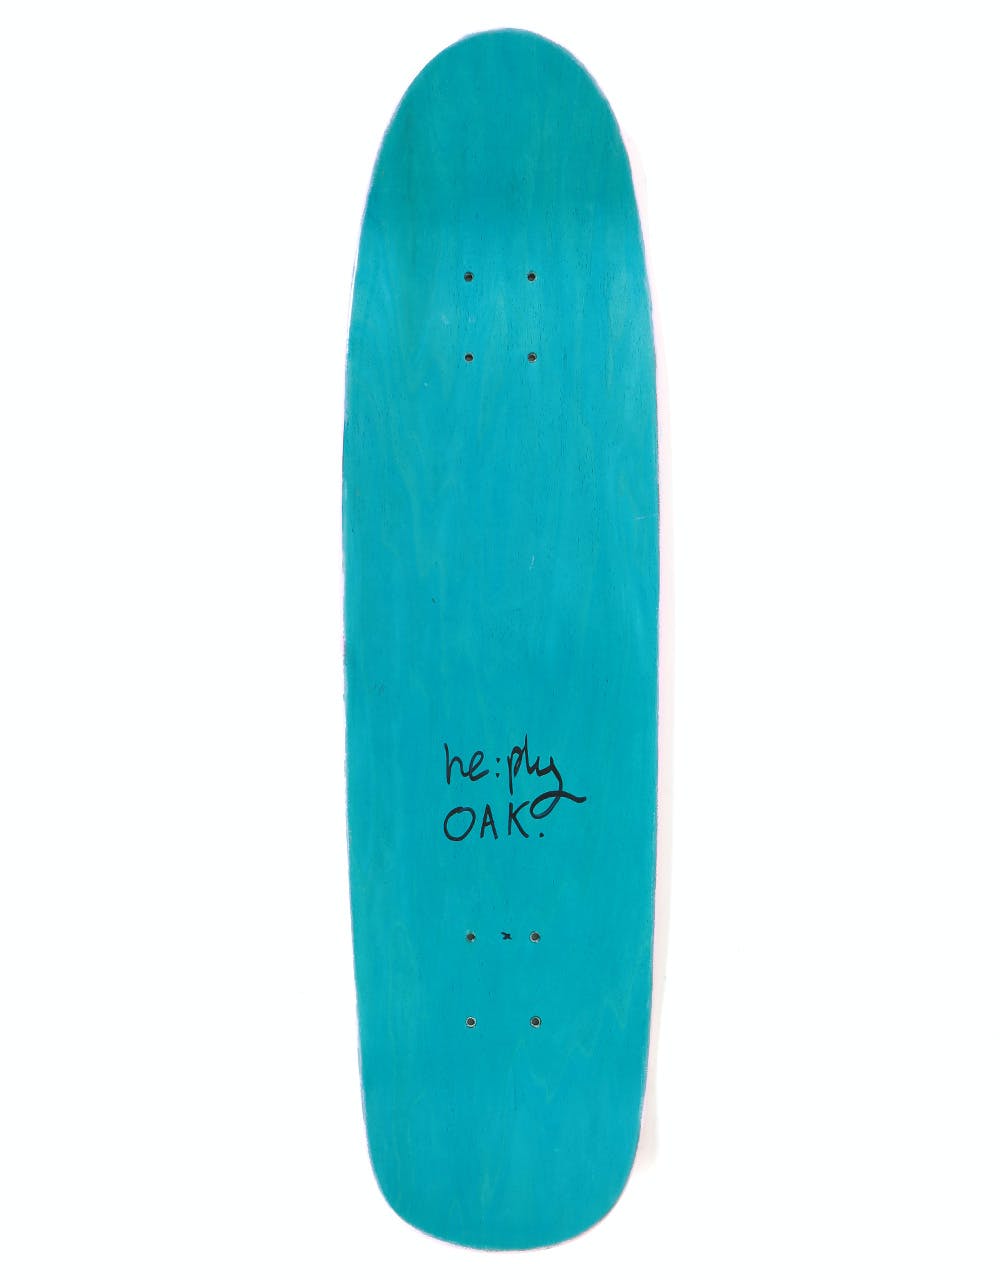 re:ply Oak Pinkstick Skateboard Deck - 8.25"